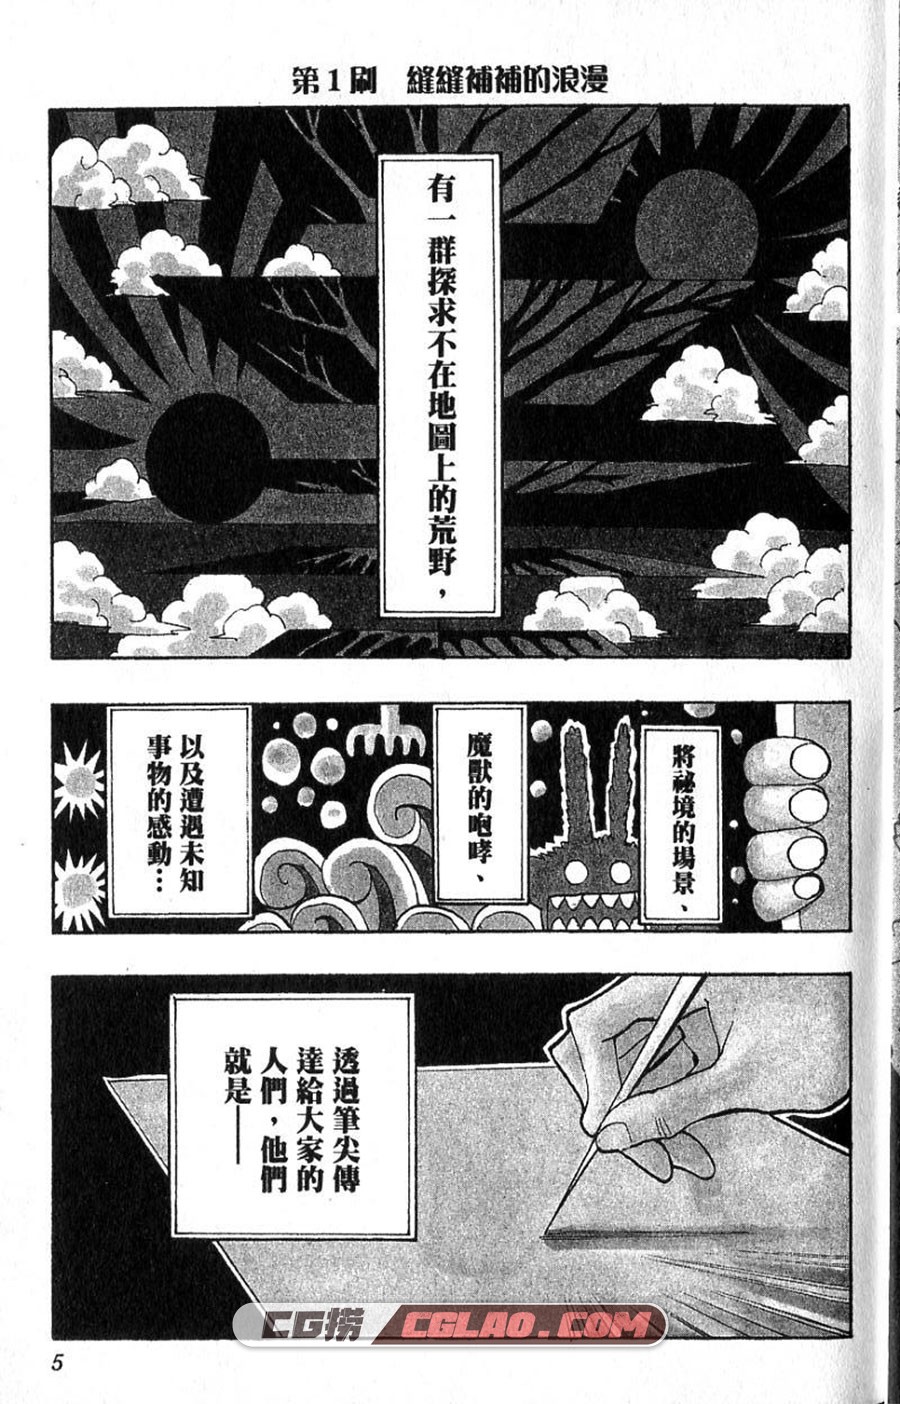 异域漂流作家 西公平 1-3卷 漫画已完结全集下载 百度网盘,01-002.jpg